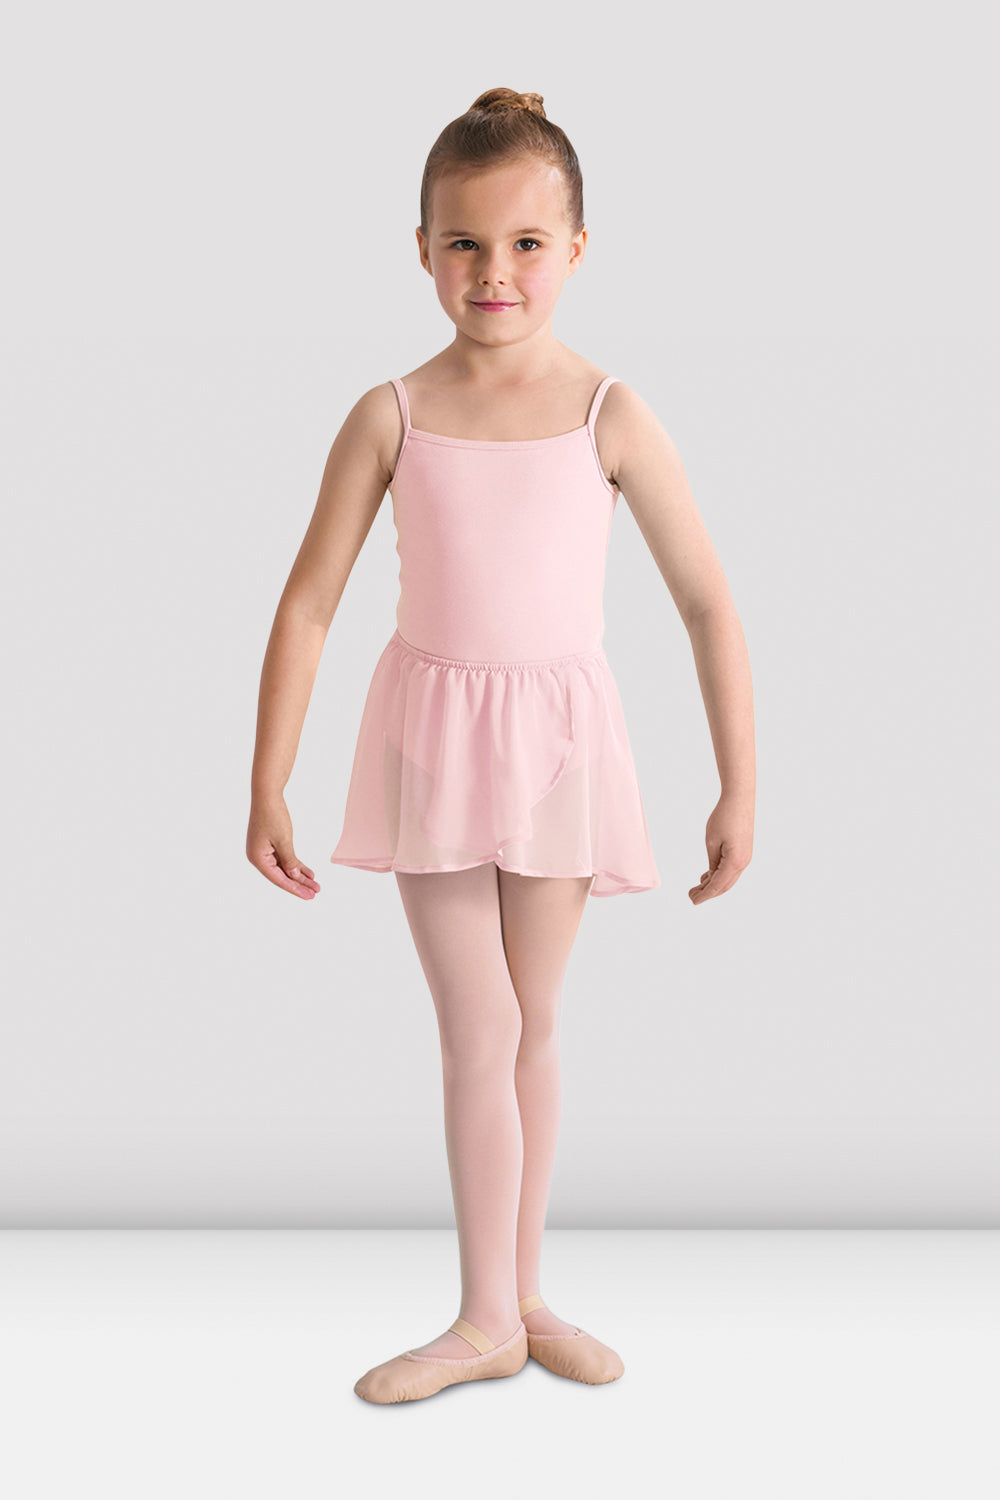 BLOCH Girls Barre Stretch Waist Ballet Skirt, Light Pink